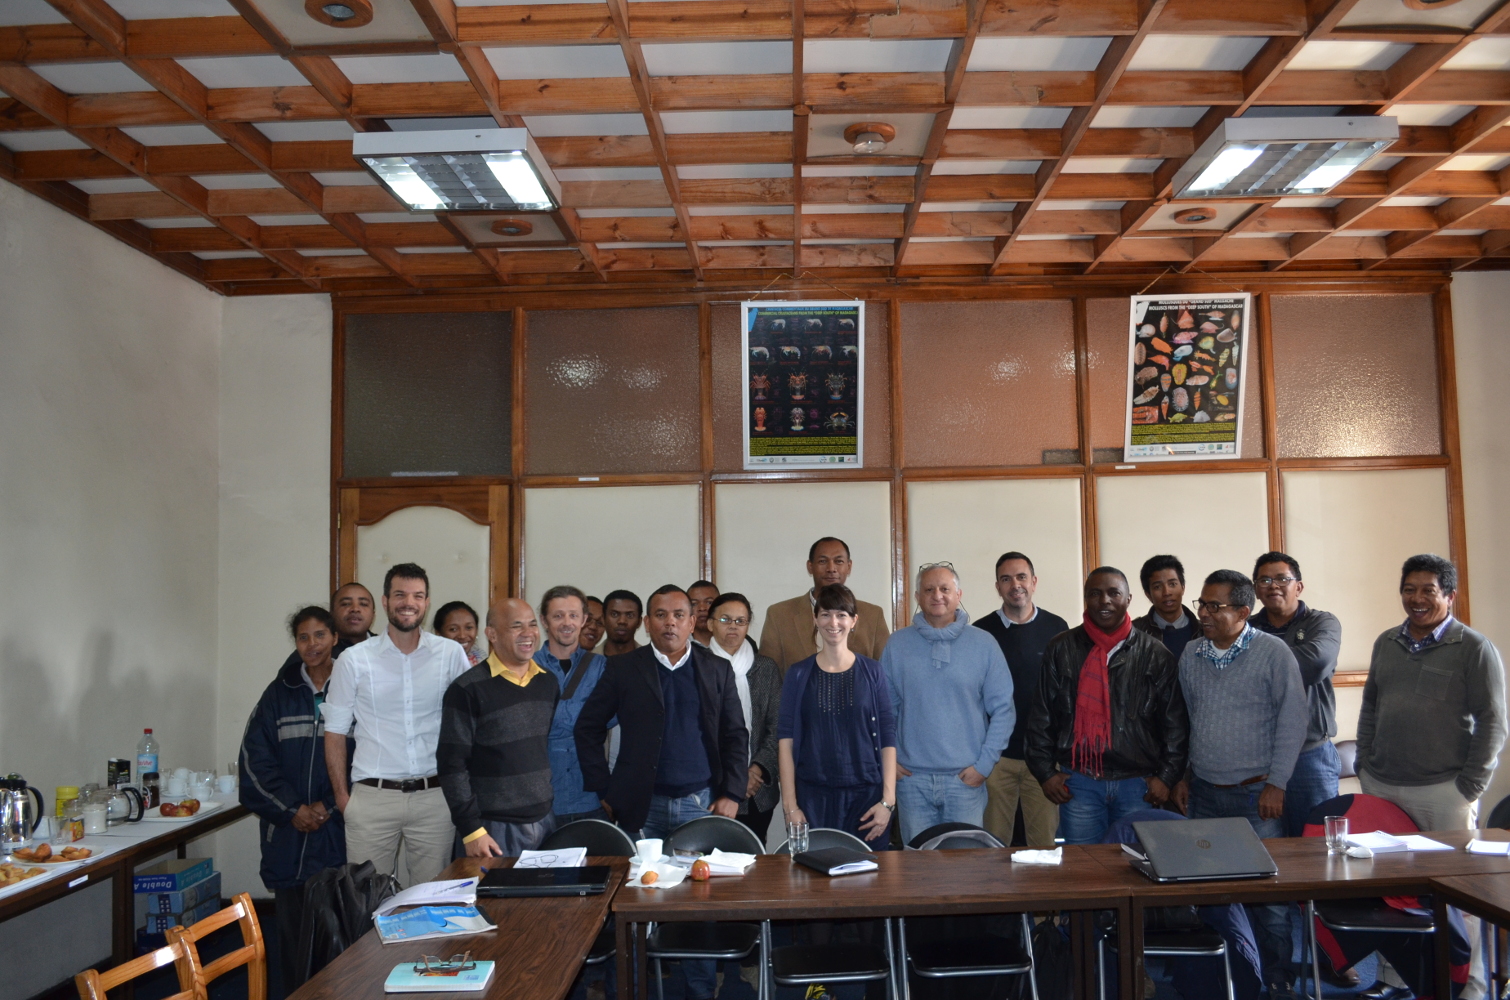 Participants à la réunion de présentation des avancées du projet, le 3 Juin 2016 à Antananarivo. Les participants incluent des chercheurs, étudiants, membres d’ONG environnementales ou institutions nationales.